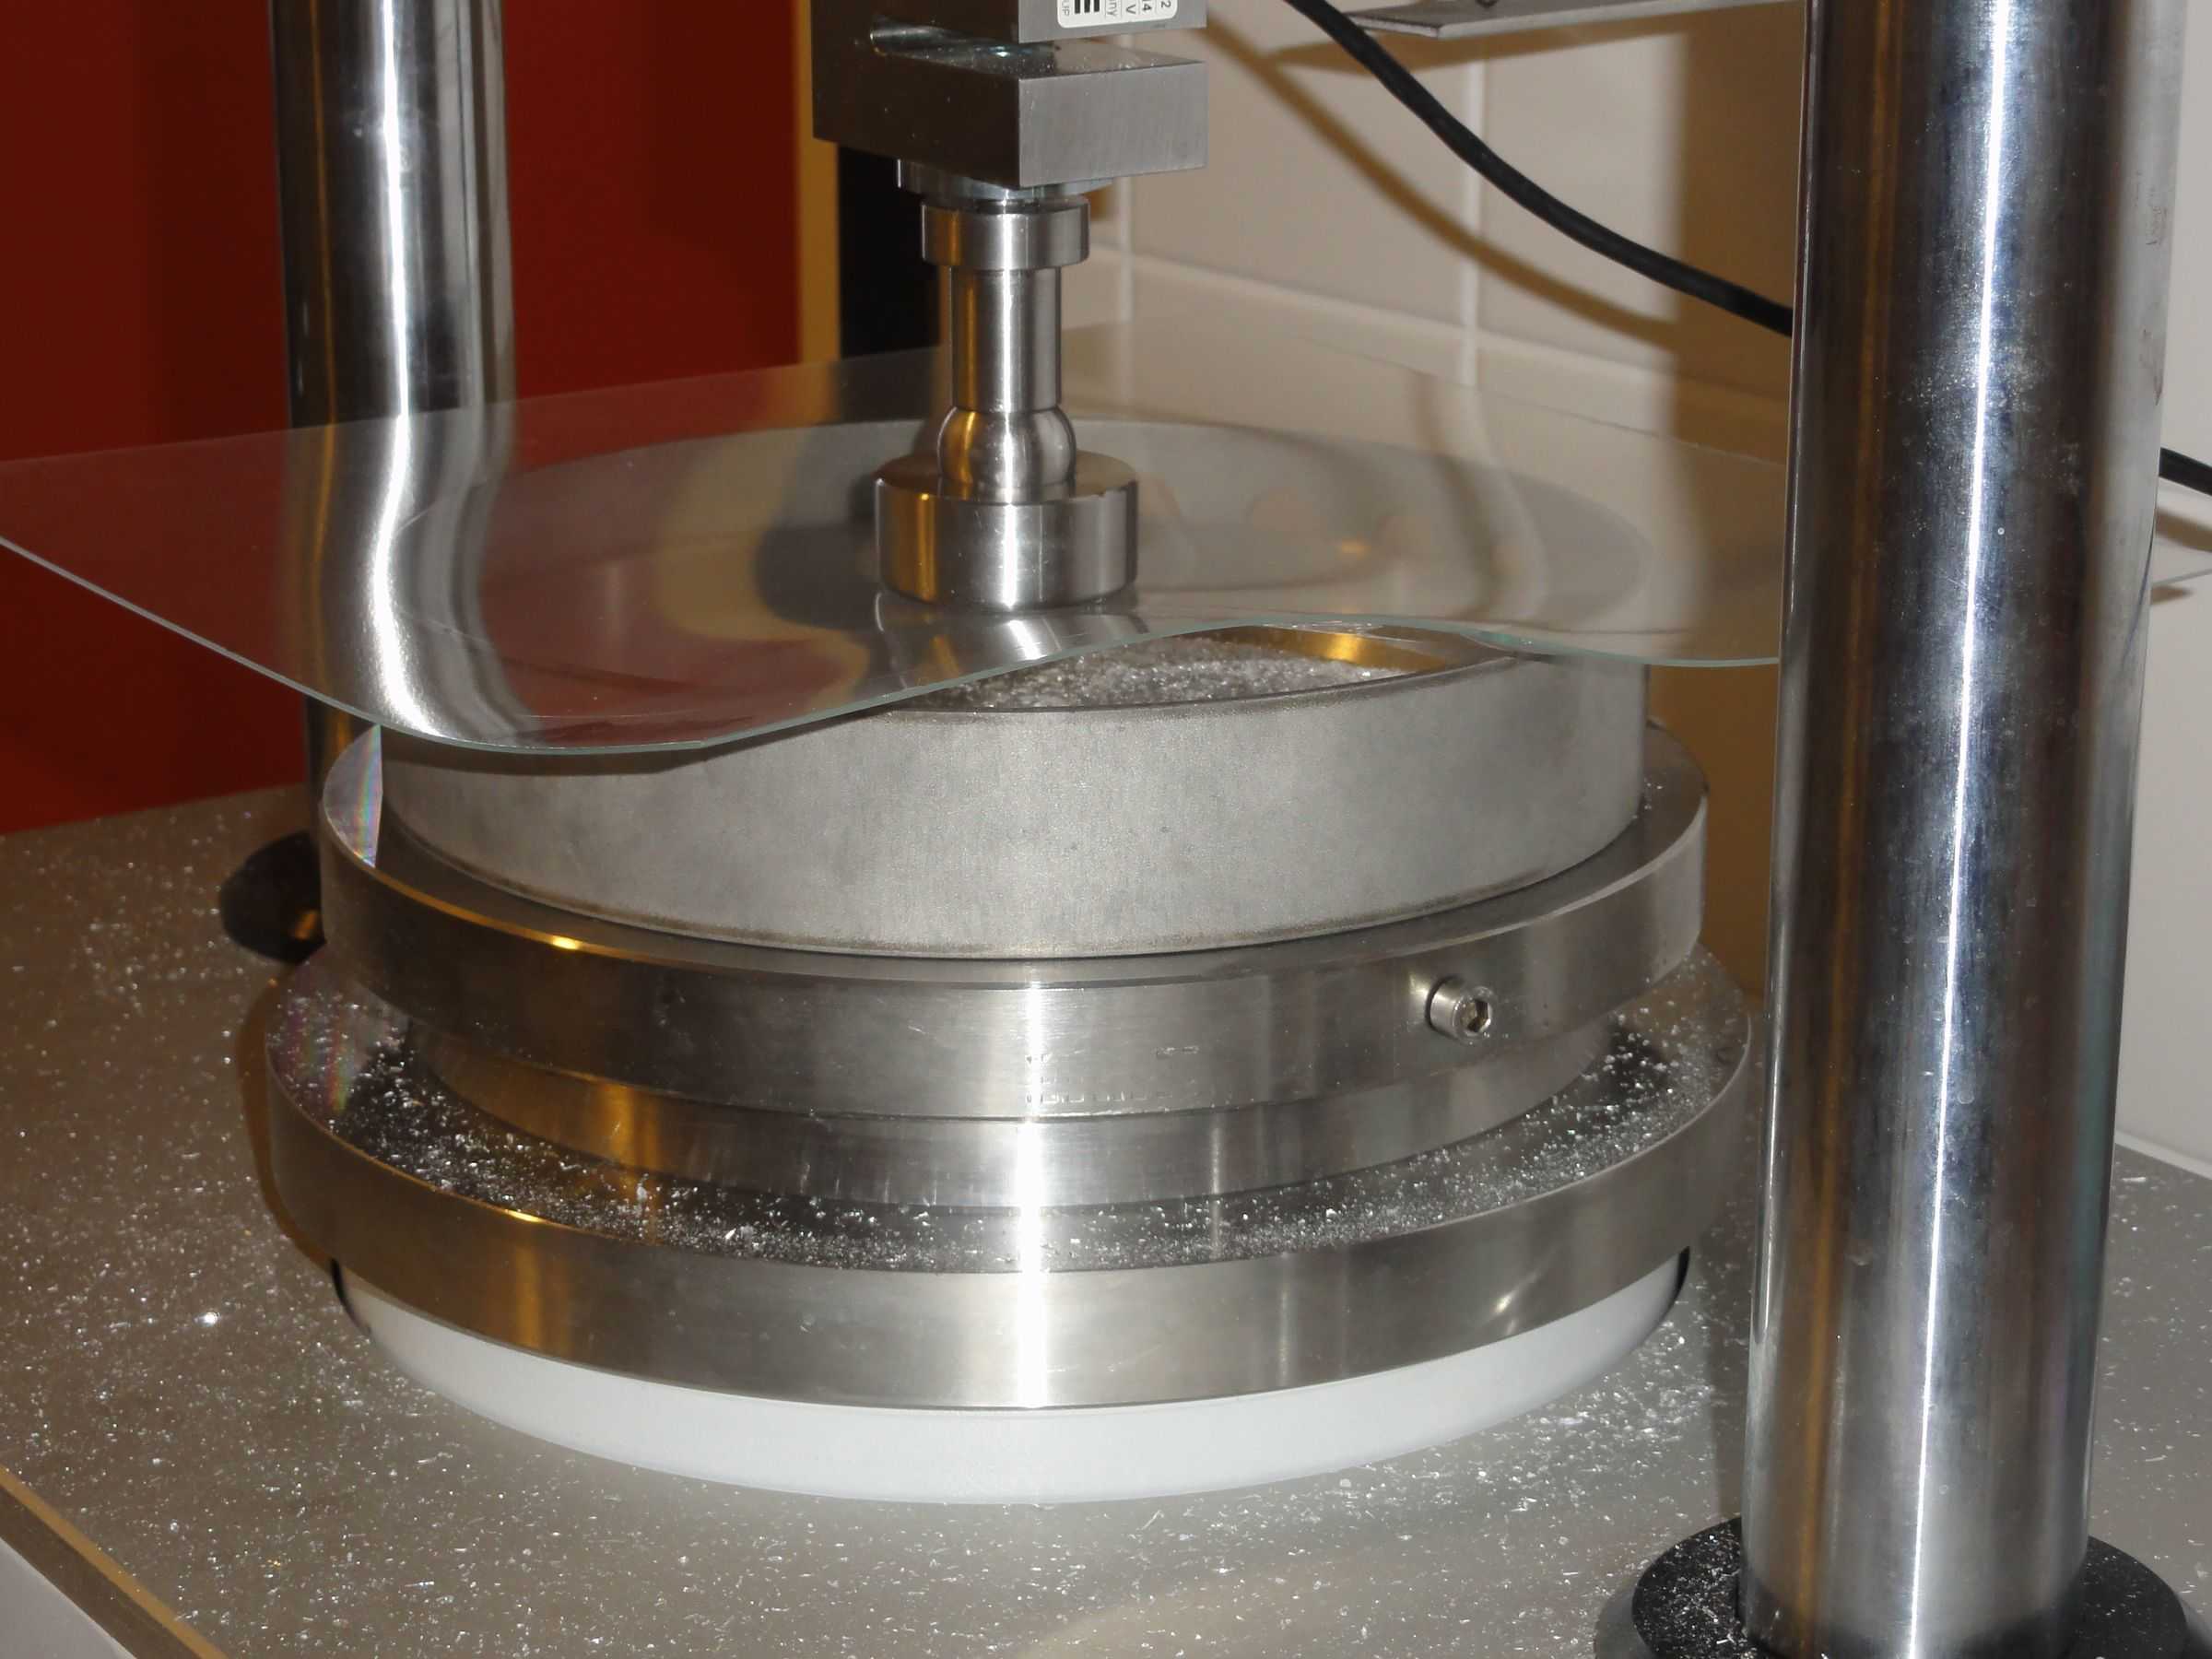 Der Doppelring Biegeversuch und andere Prüfverfahren müssen für Glas unter zwei Millimetern Dicke angepasst werden.